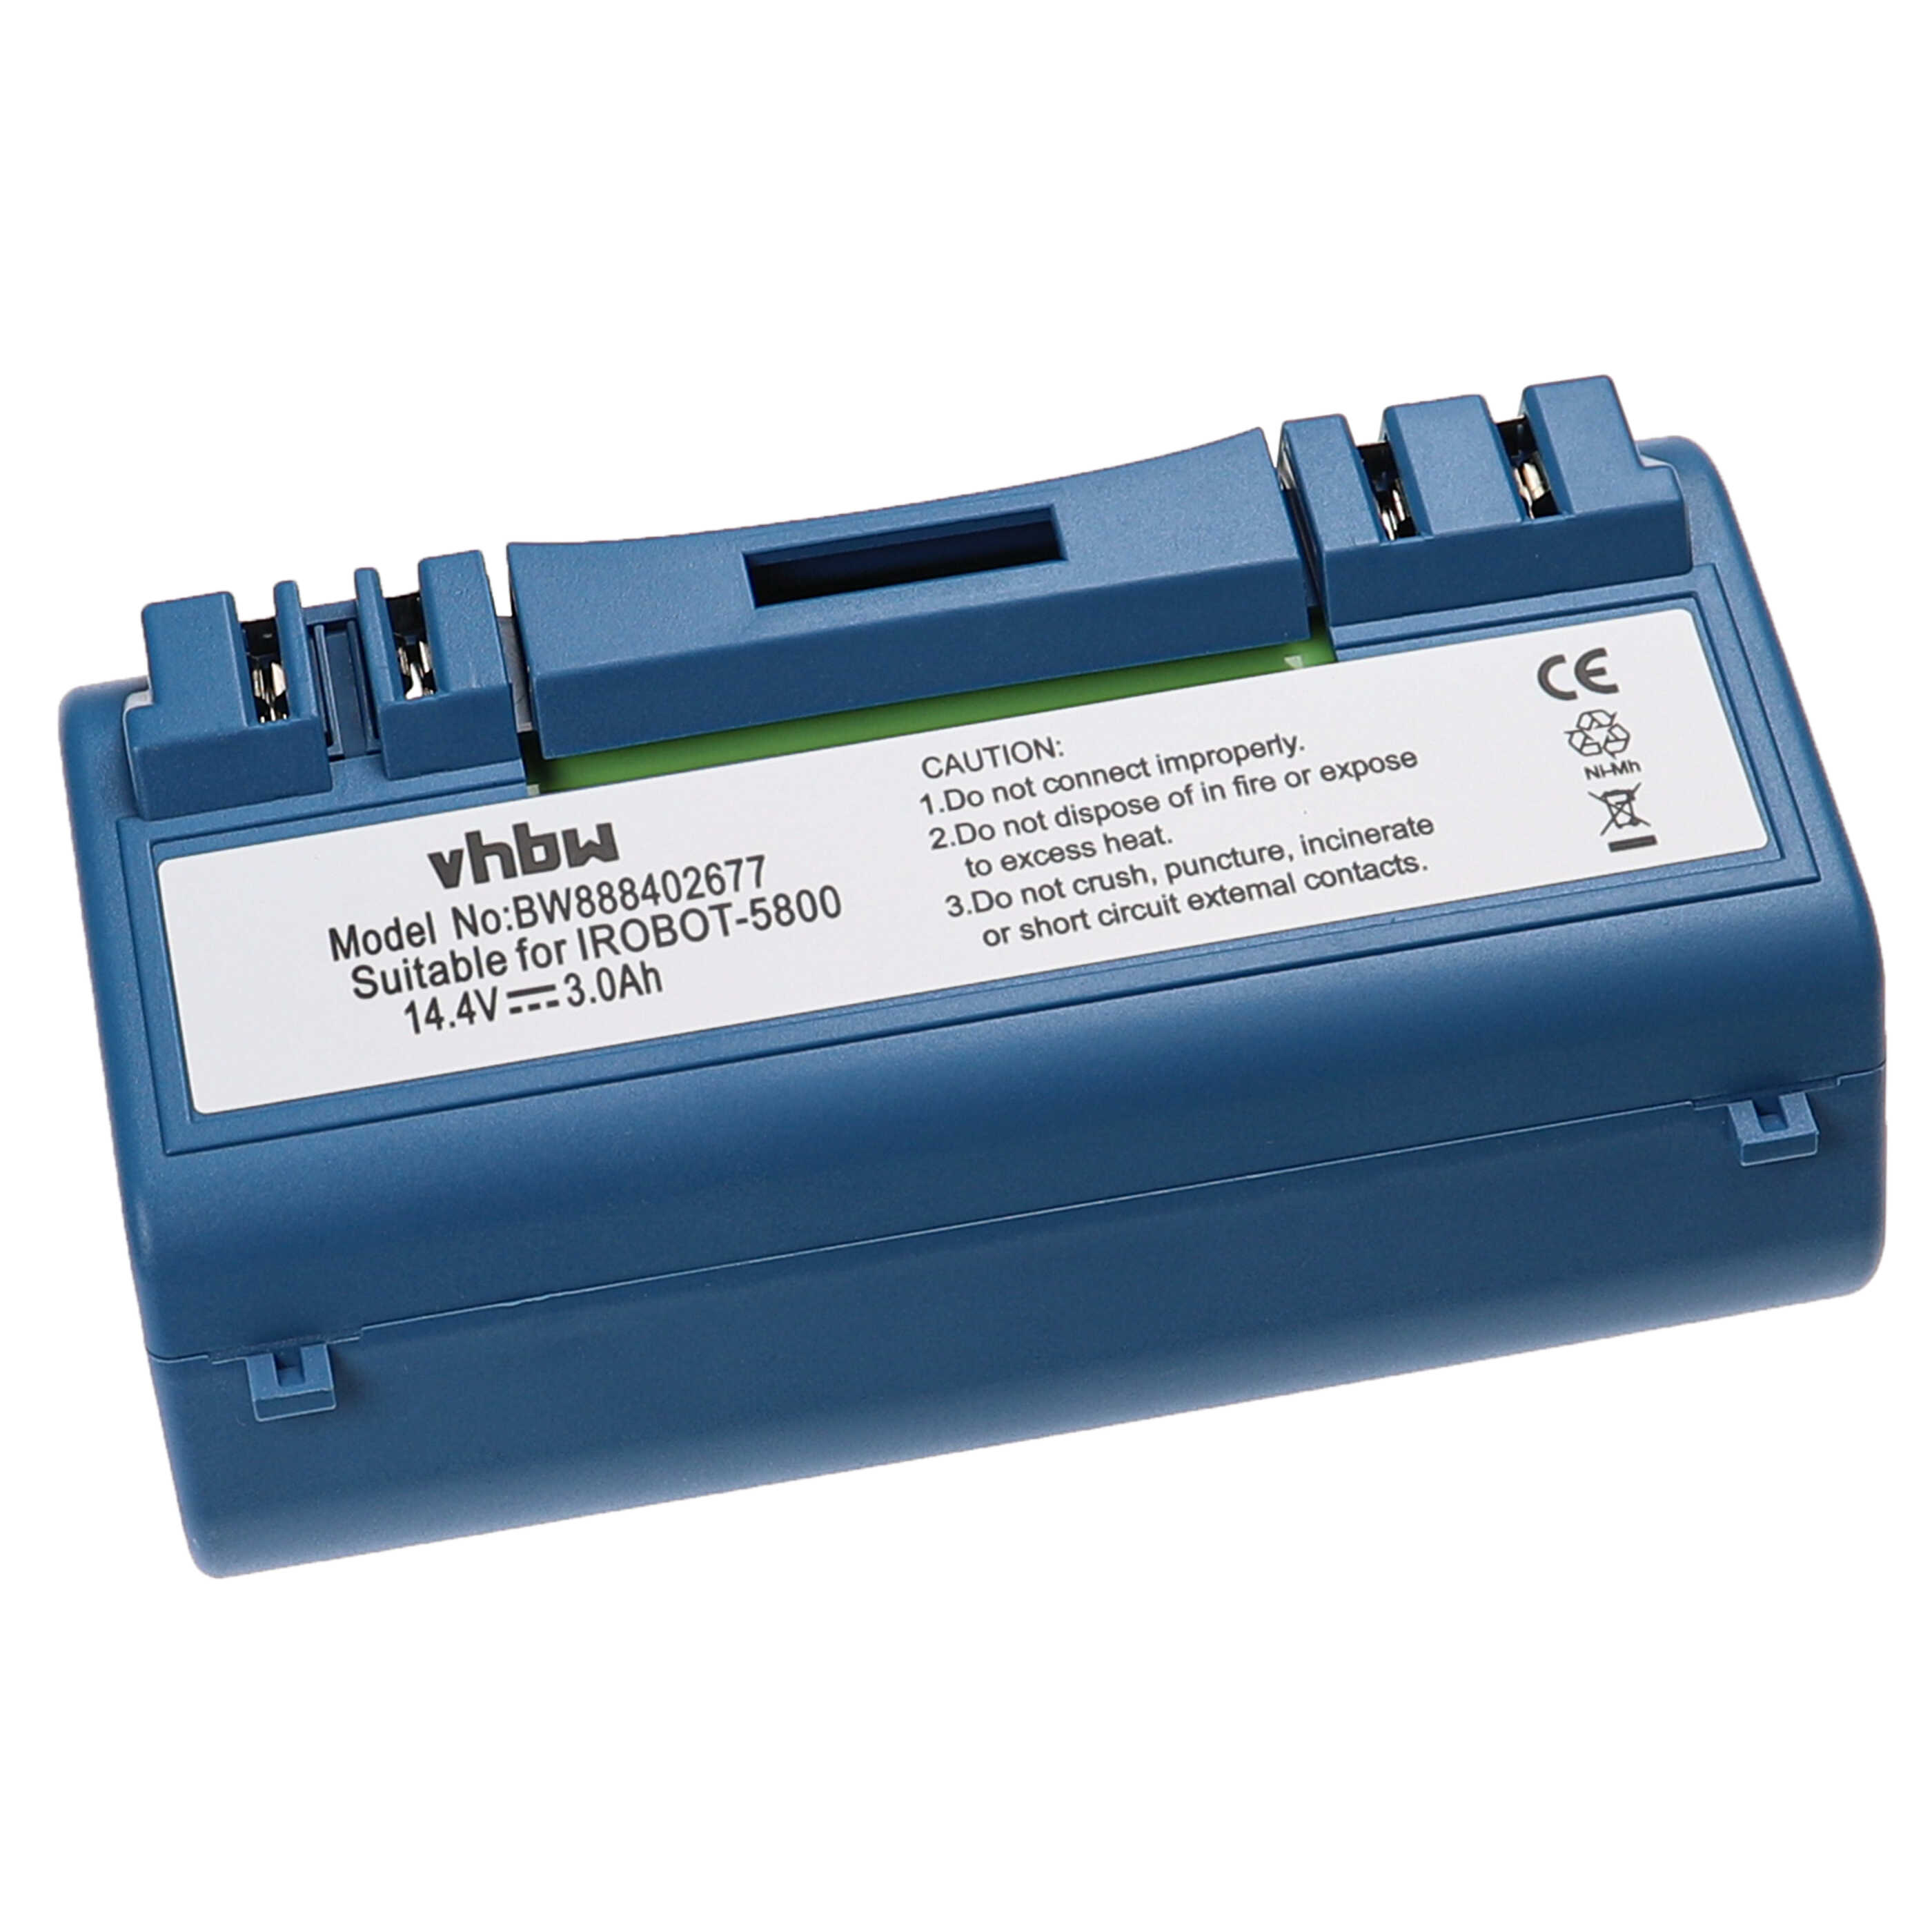 Akumulator do robota zamiennik AEG SP5832, SP385-BAT, 14904 - 3000 mAh 14,4 V NiMH, niebieski